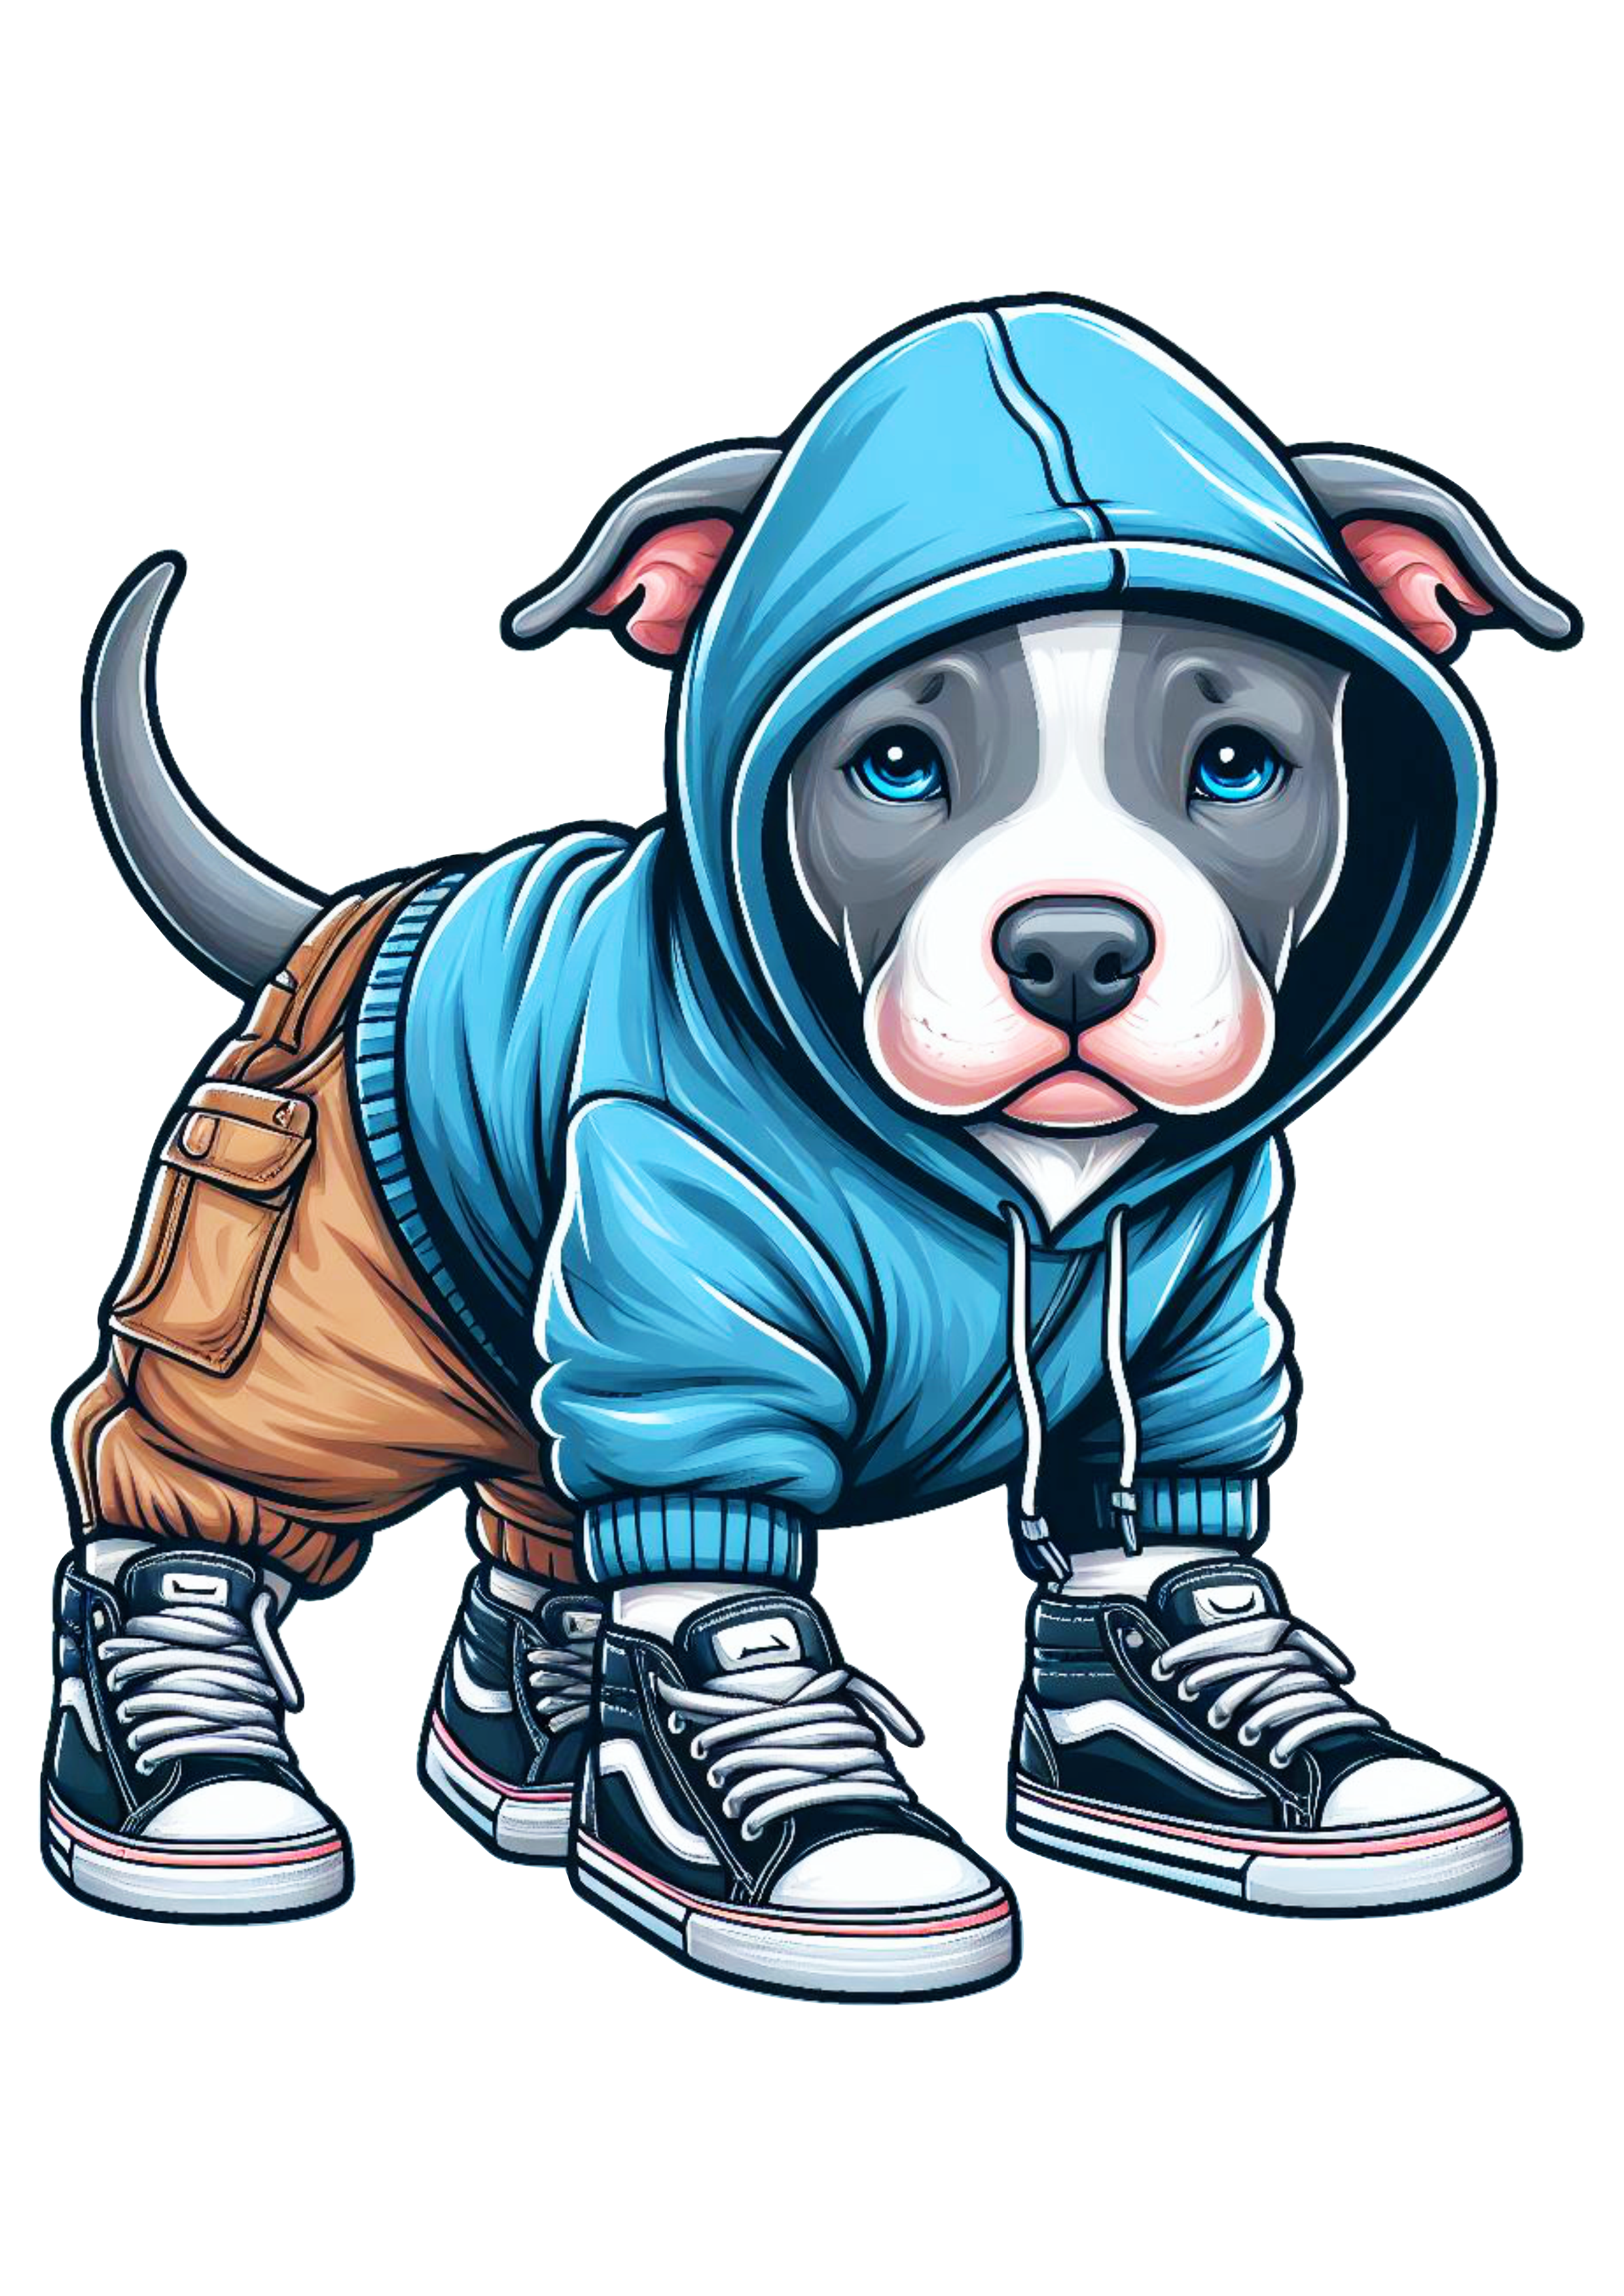 Pitbull cachorrinho de roupa de skatista desenho infantil desenho artístico artes gráficas png